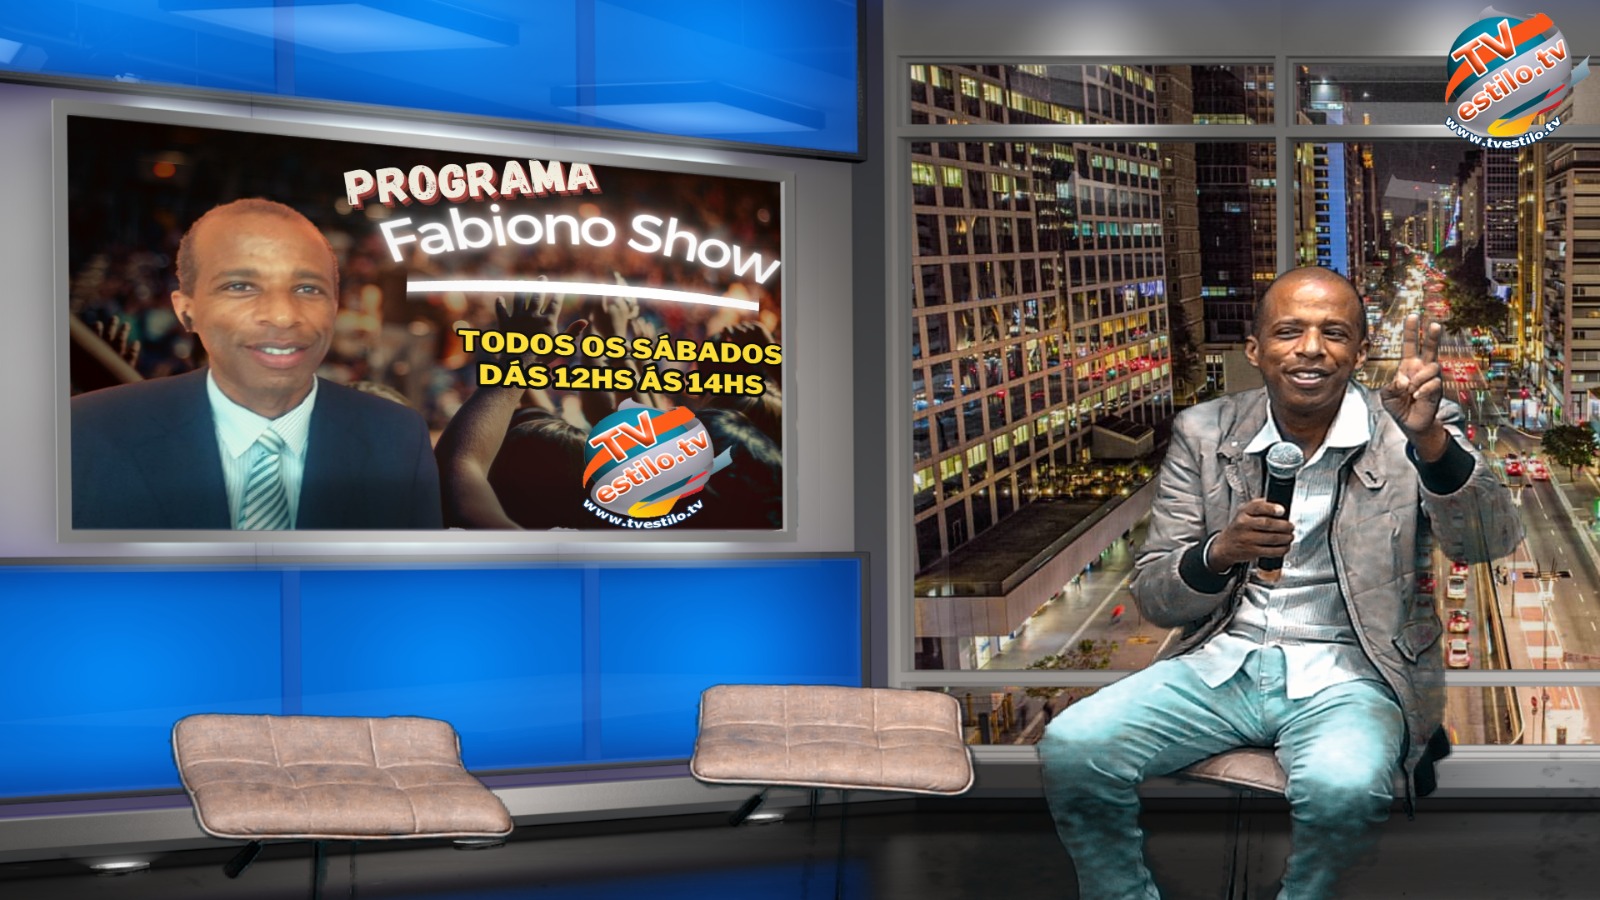 noticia Programa Fabiano Show estreia dia 30 de março na TV Estilo